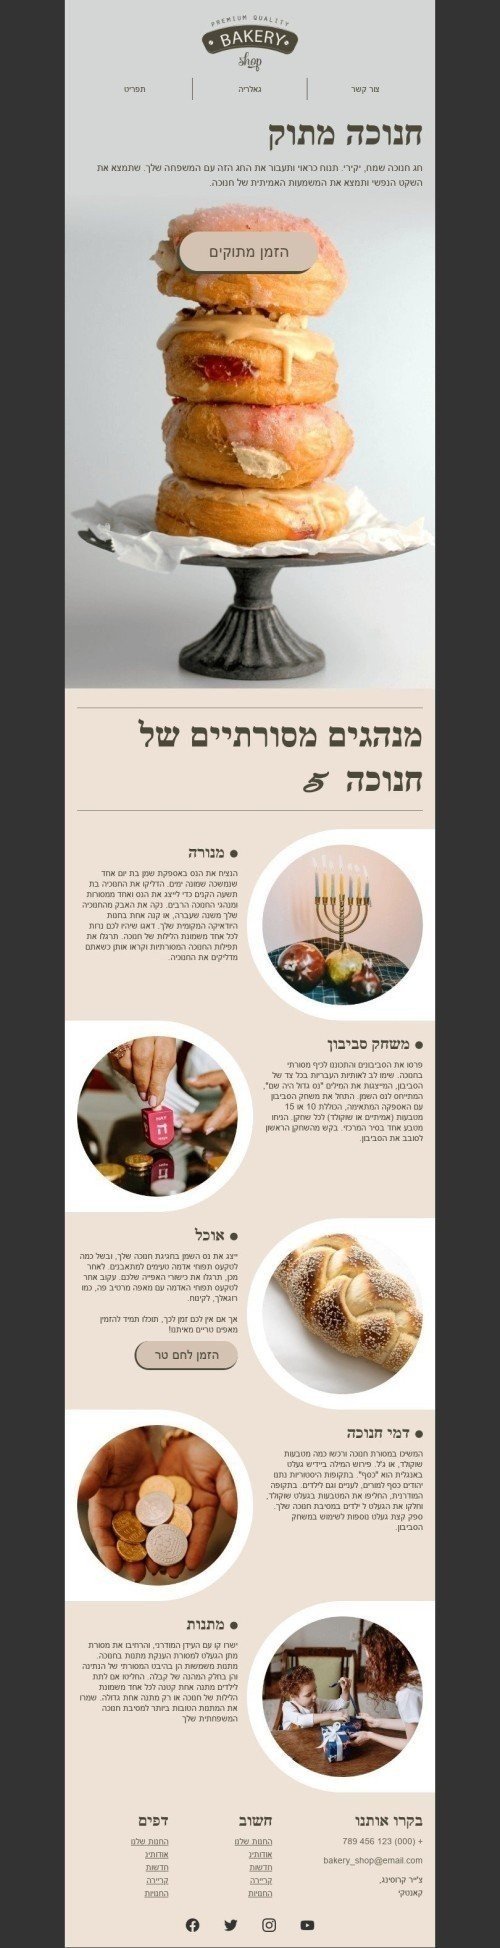 Hanukkah Email Template «Sweet Hanukkah» for Food industry desktop view